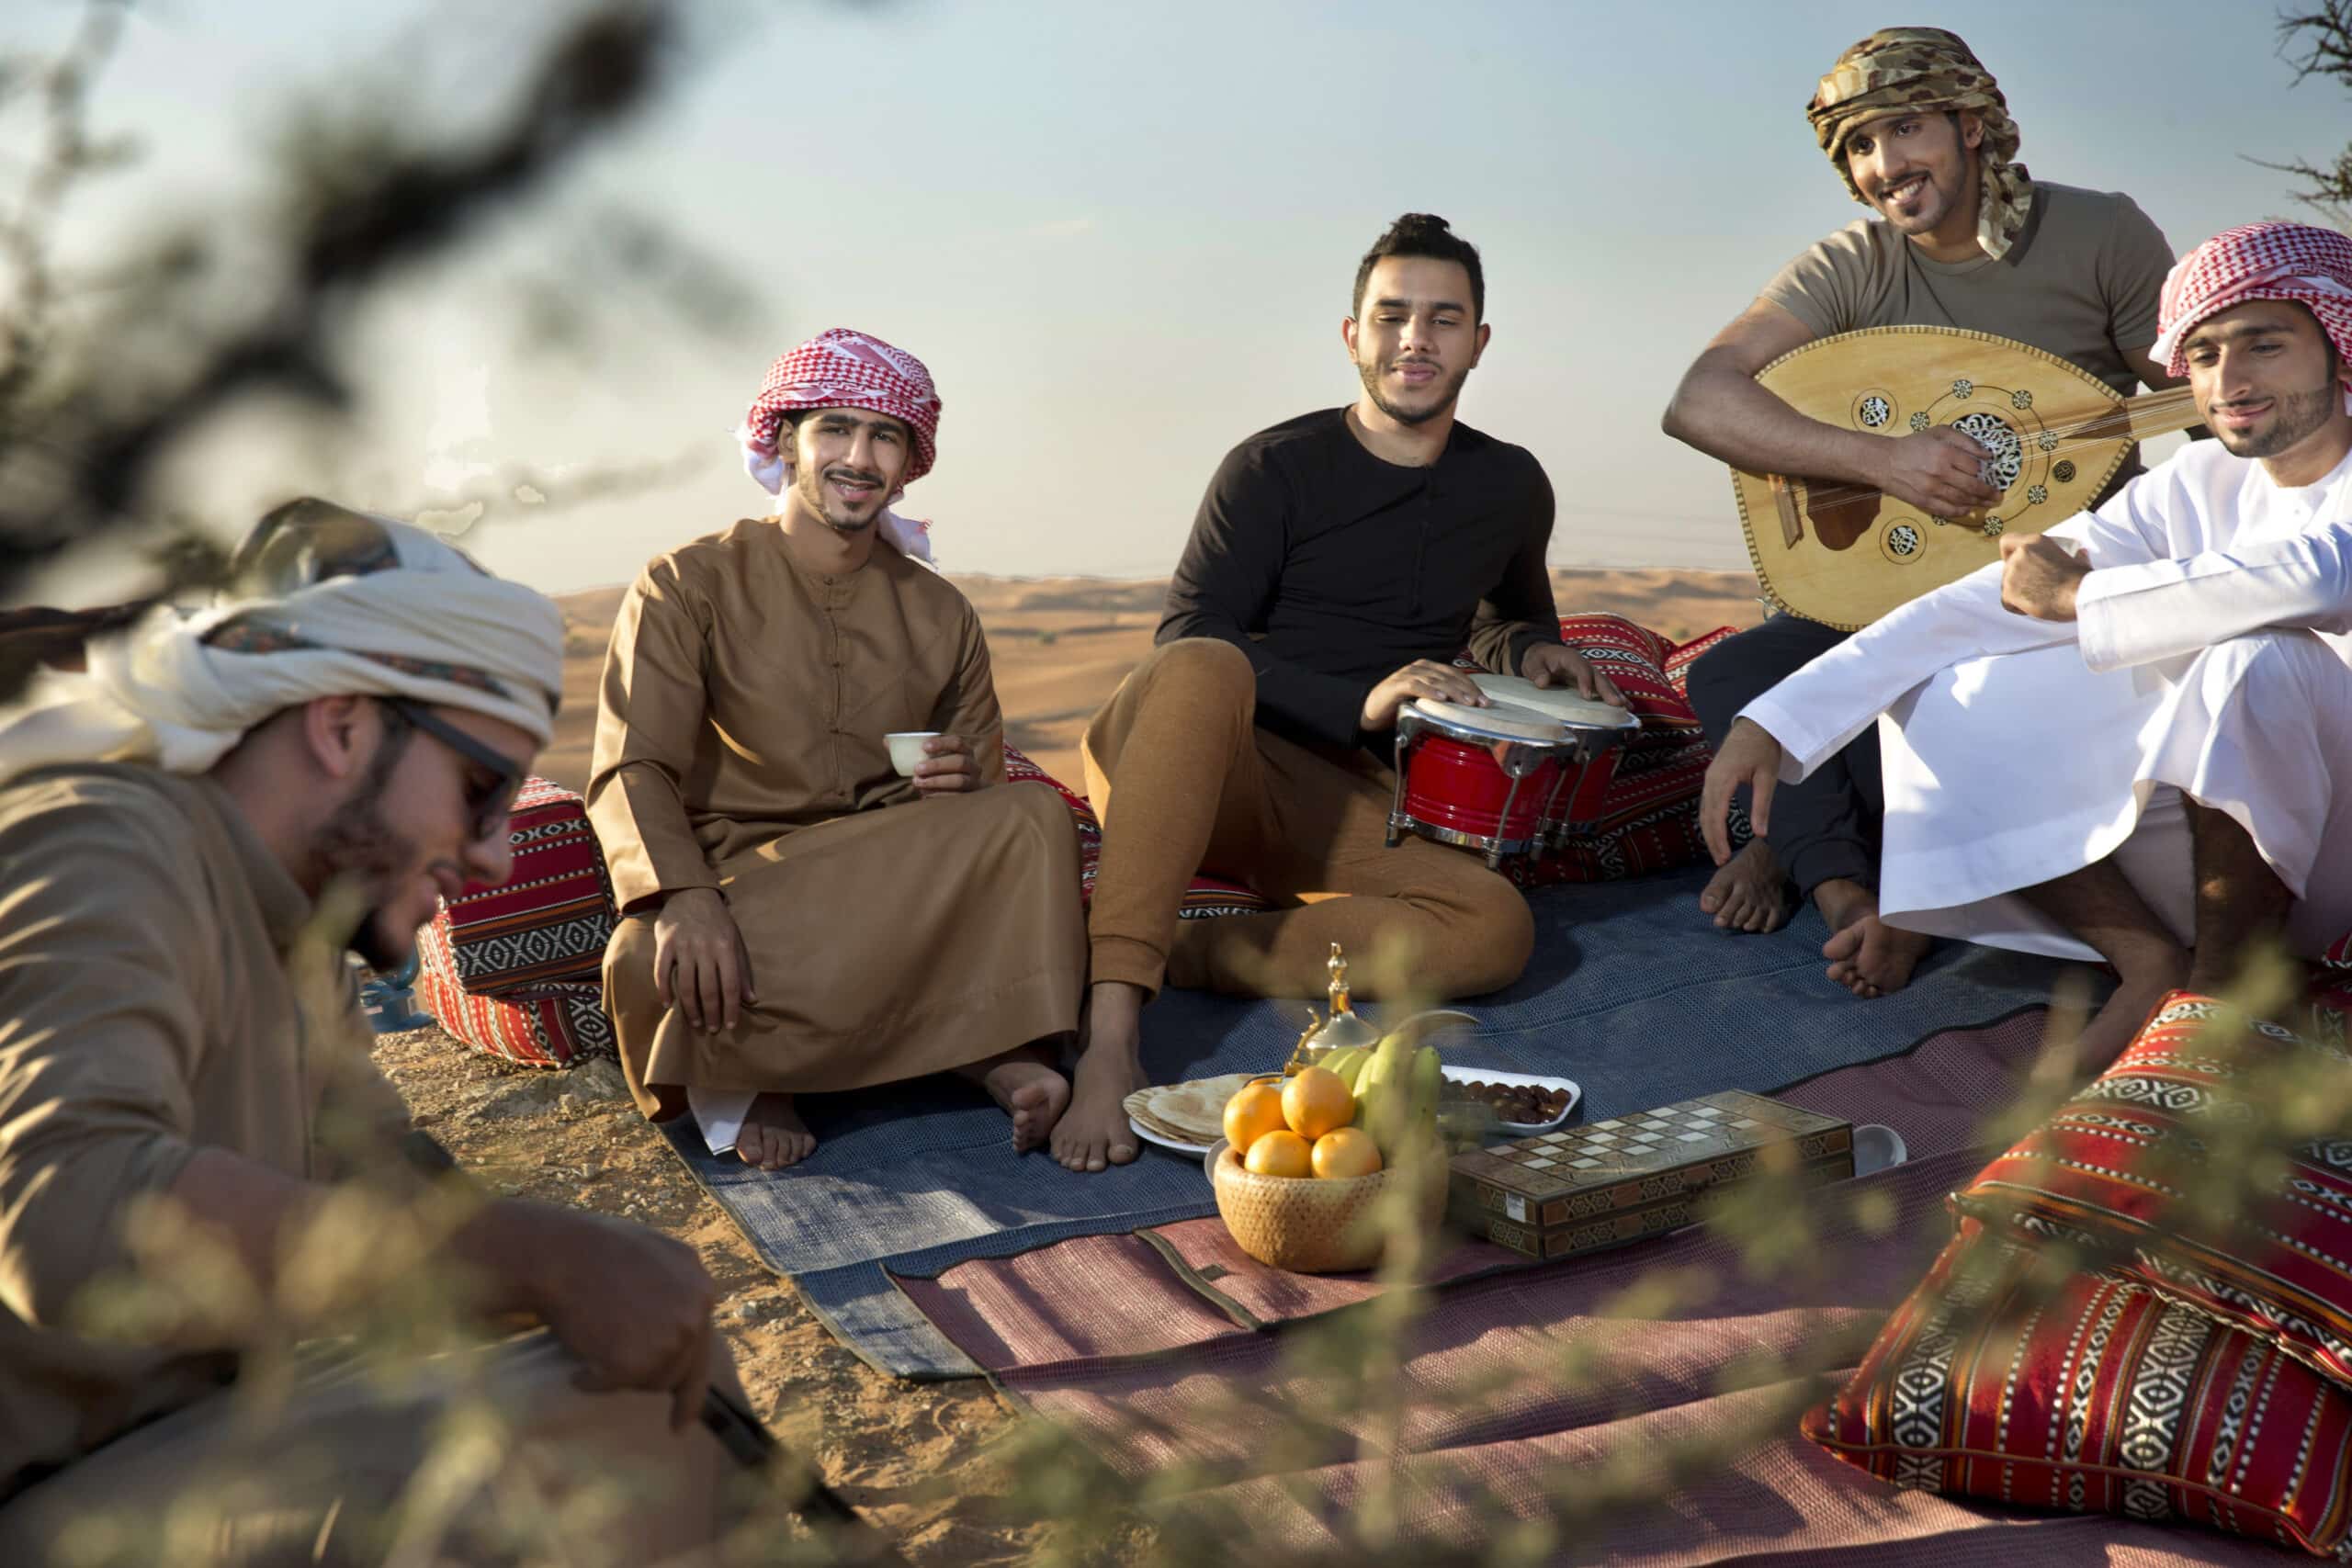 Eine Gruppe von fünf Männern in traditioneller nahöstlicher Kleidung sitzt auf einem bunten Teppich in einer Wüstenlandschaft und genießt die Gesellschaft des anderen, während einer von ihnen Trommel und ein anderer ein Saiteninstrument spielt. © Fotografie Tomas Rodriguez